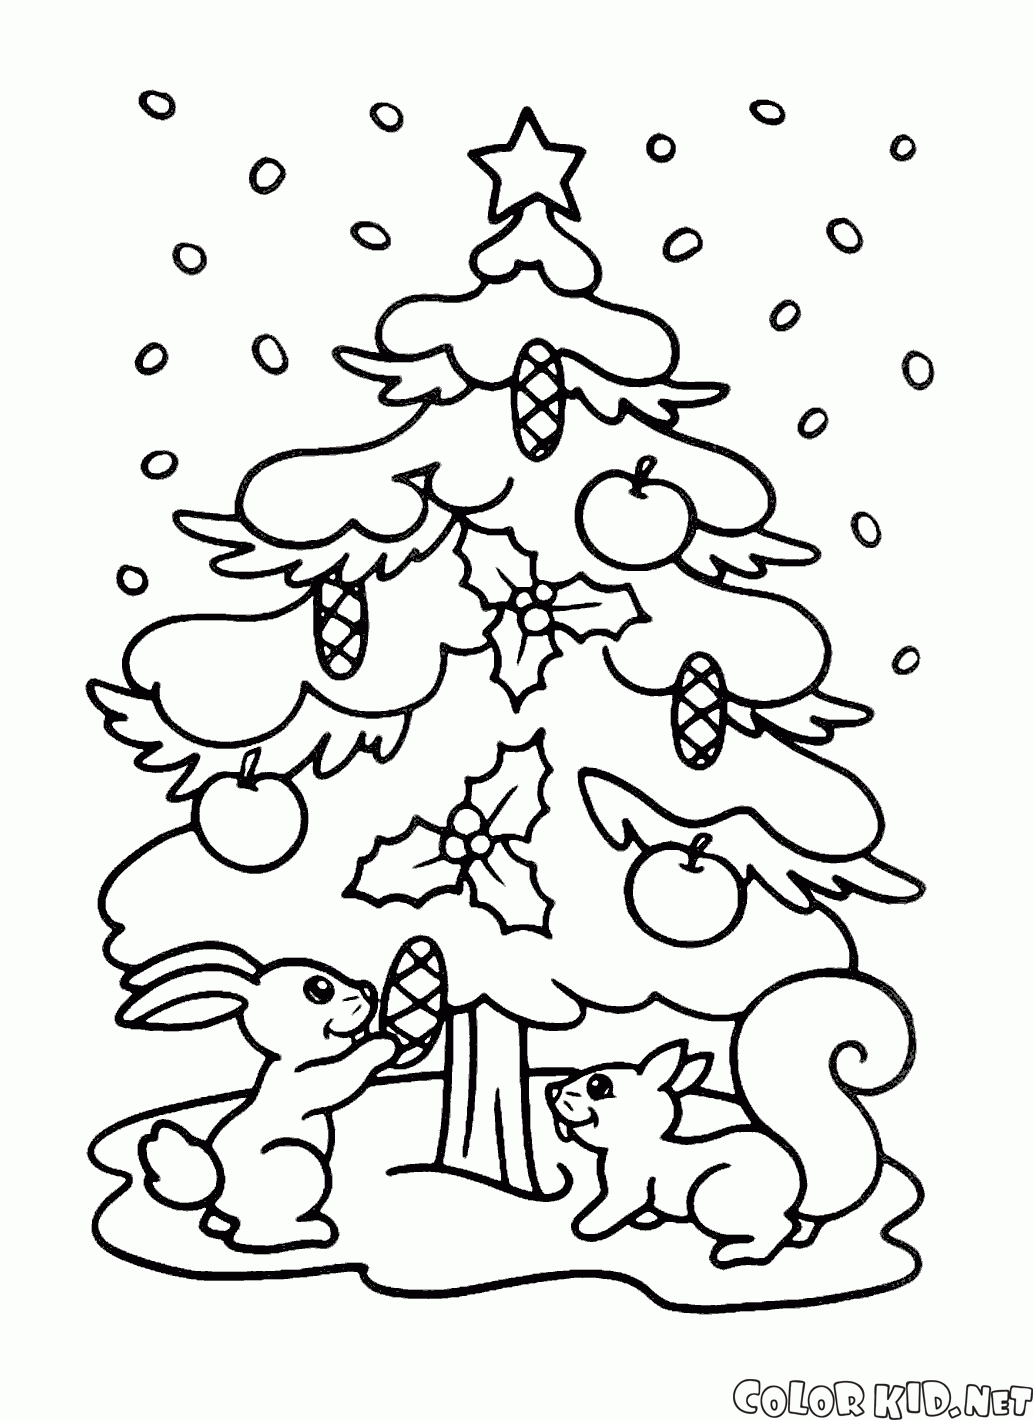 شجرة عيد الميلاد والسناجب